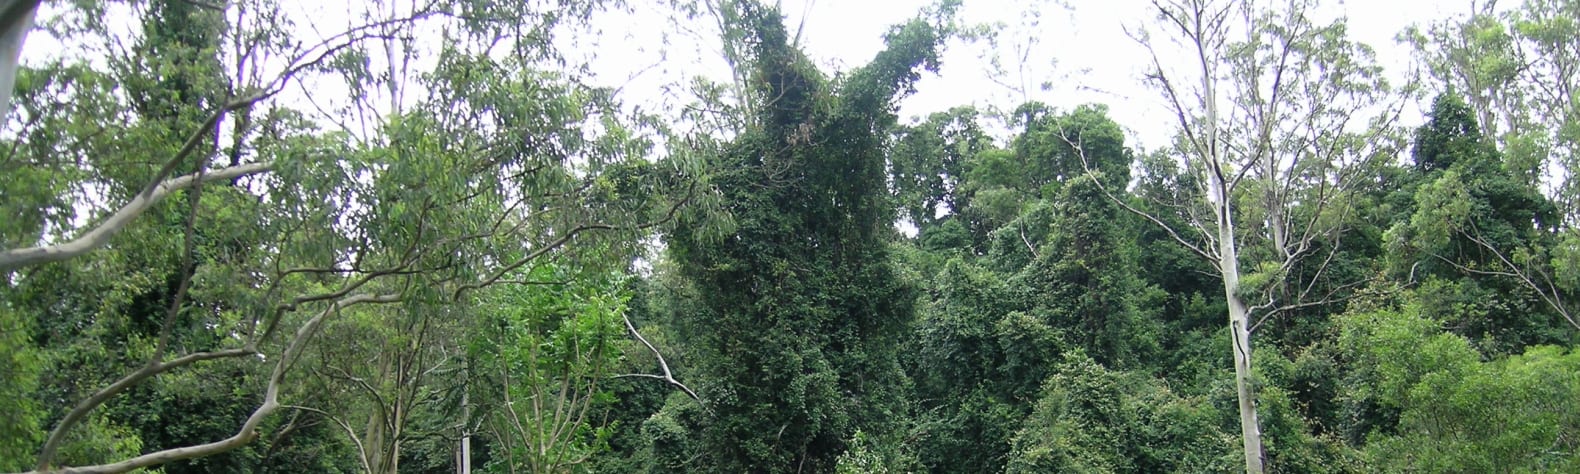 Cottan-Bimbang National Park